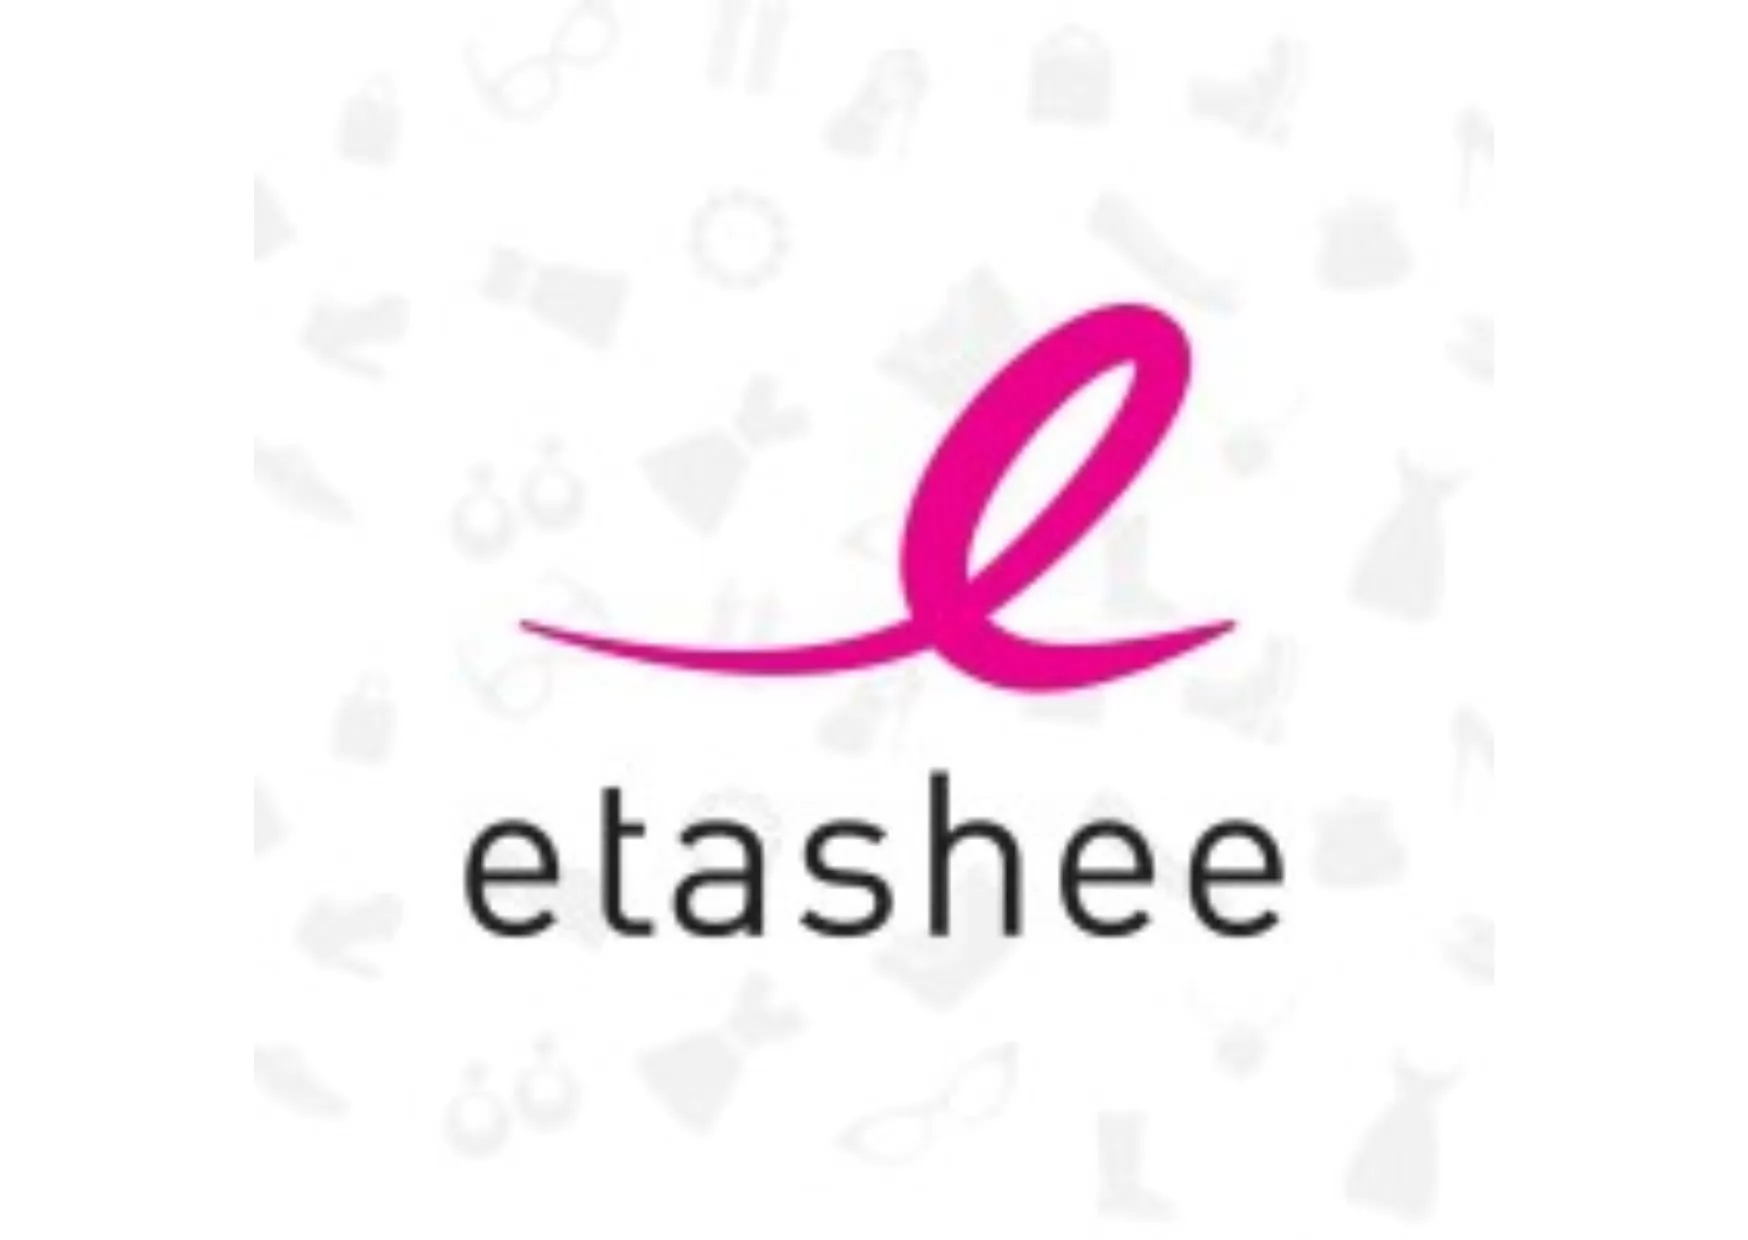 etashee